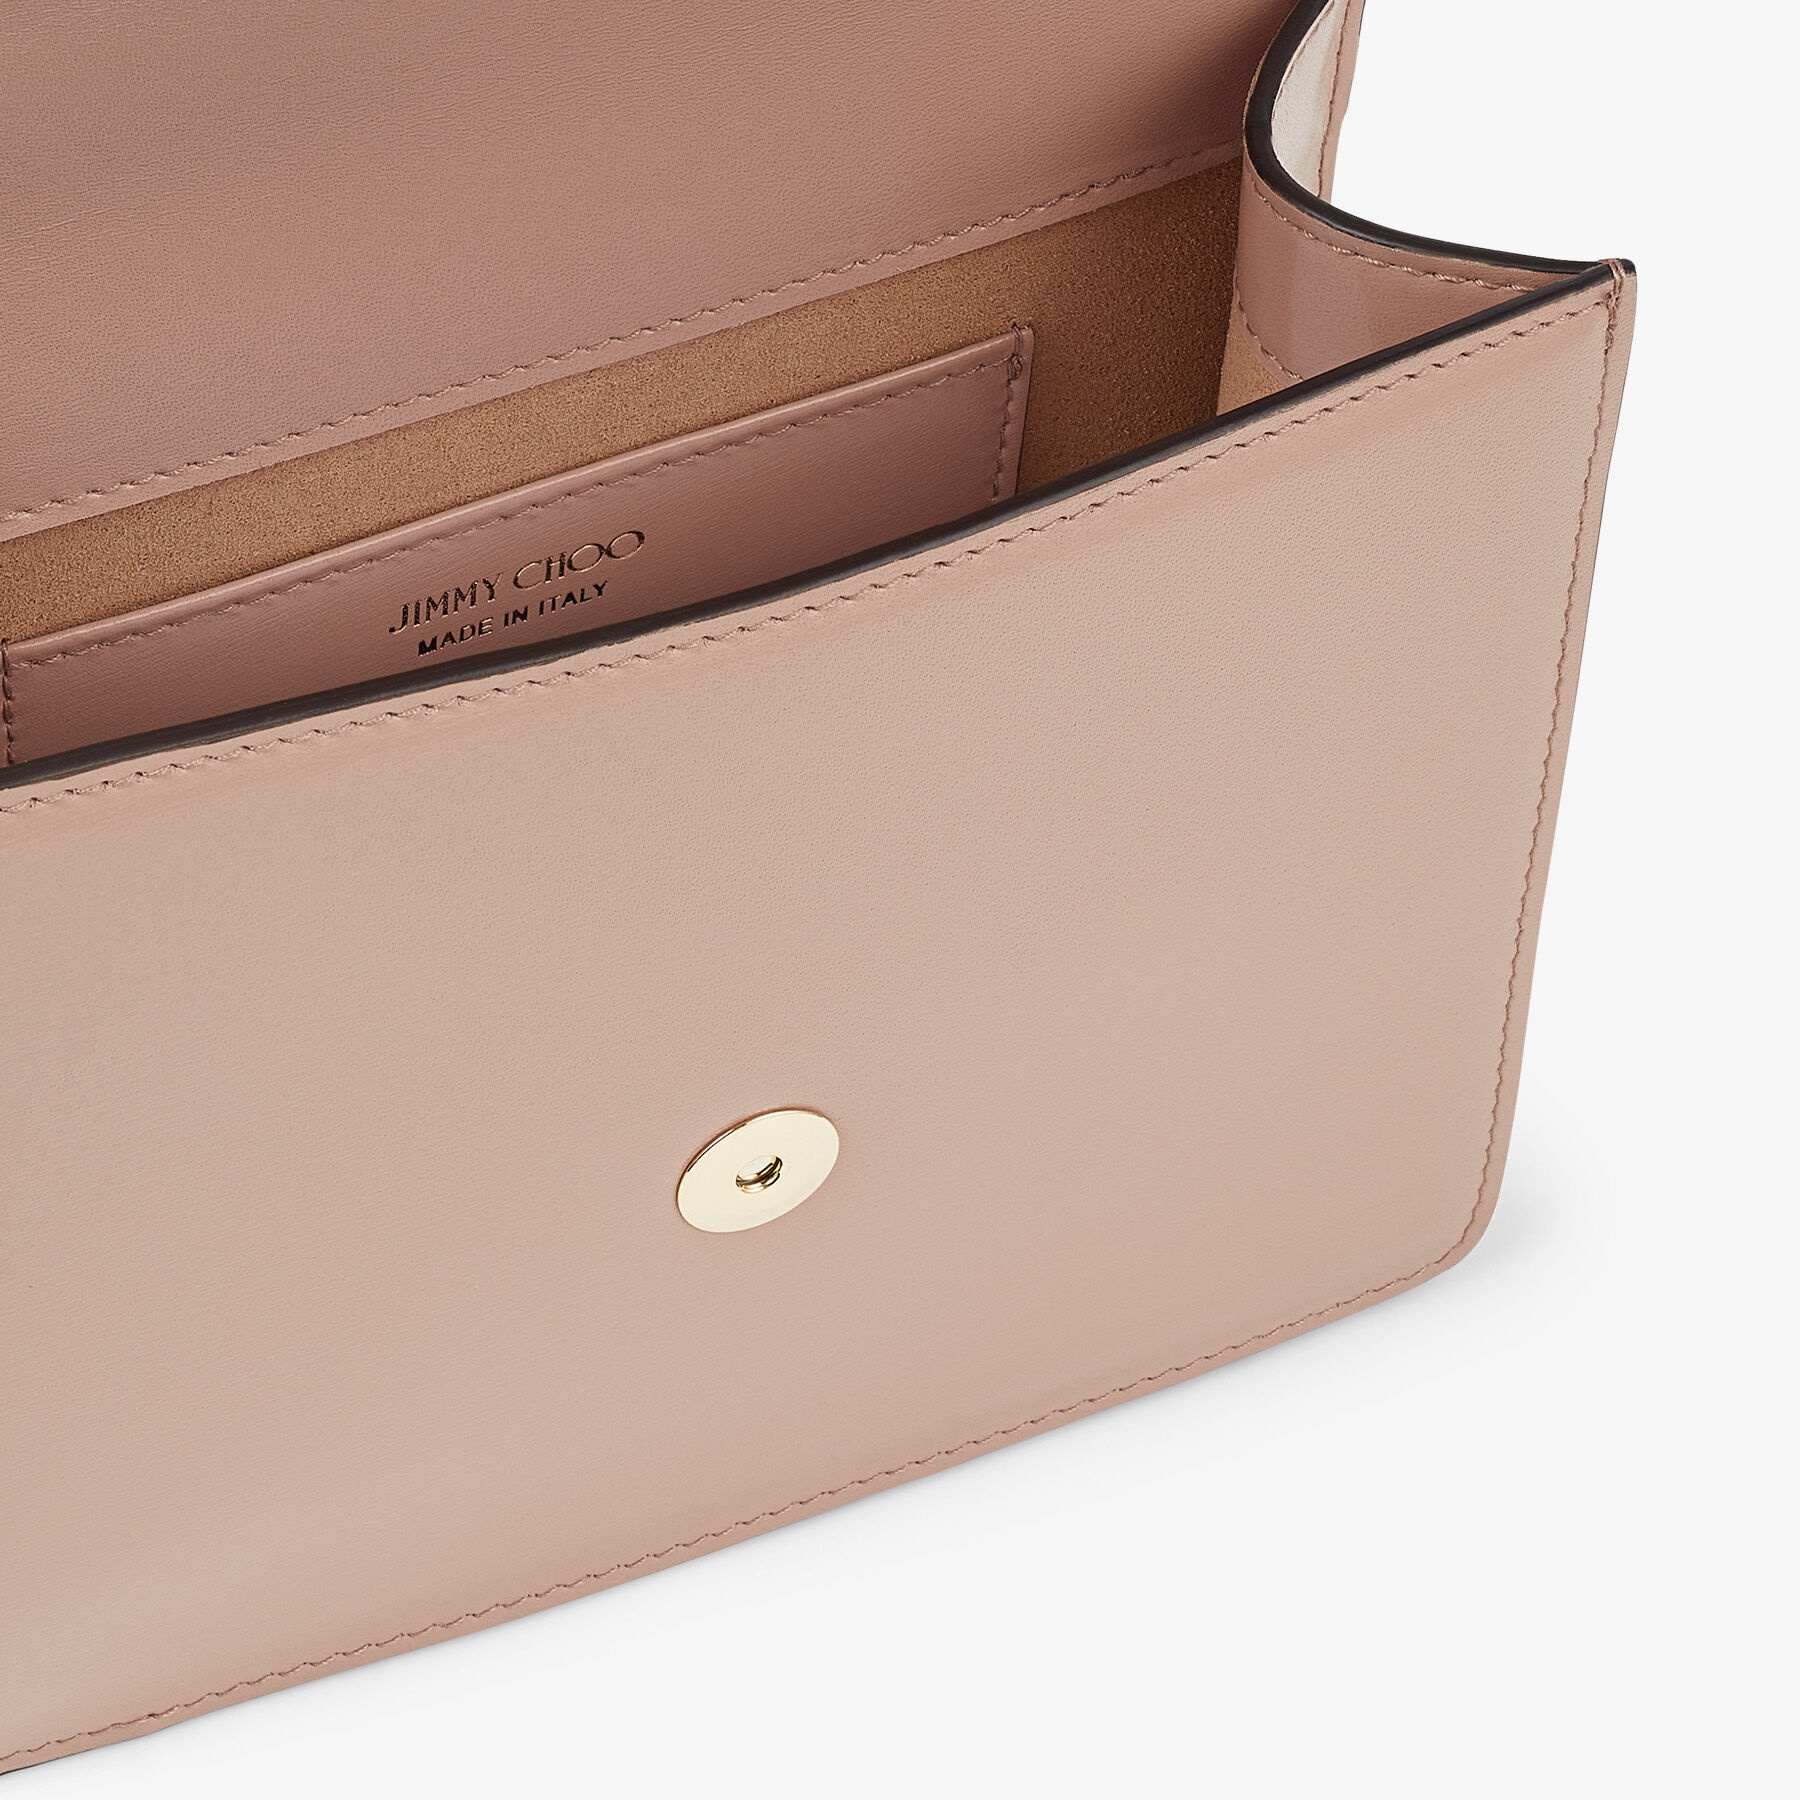 Varenne Quad XS
Ballet Pink Box Leather Shoulder Bag with Pearl Strap - 3